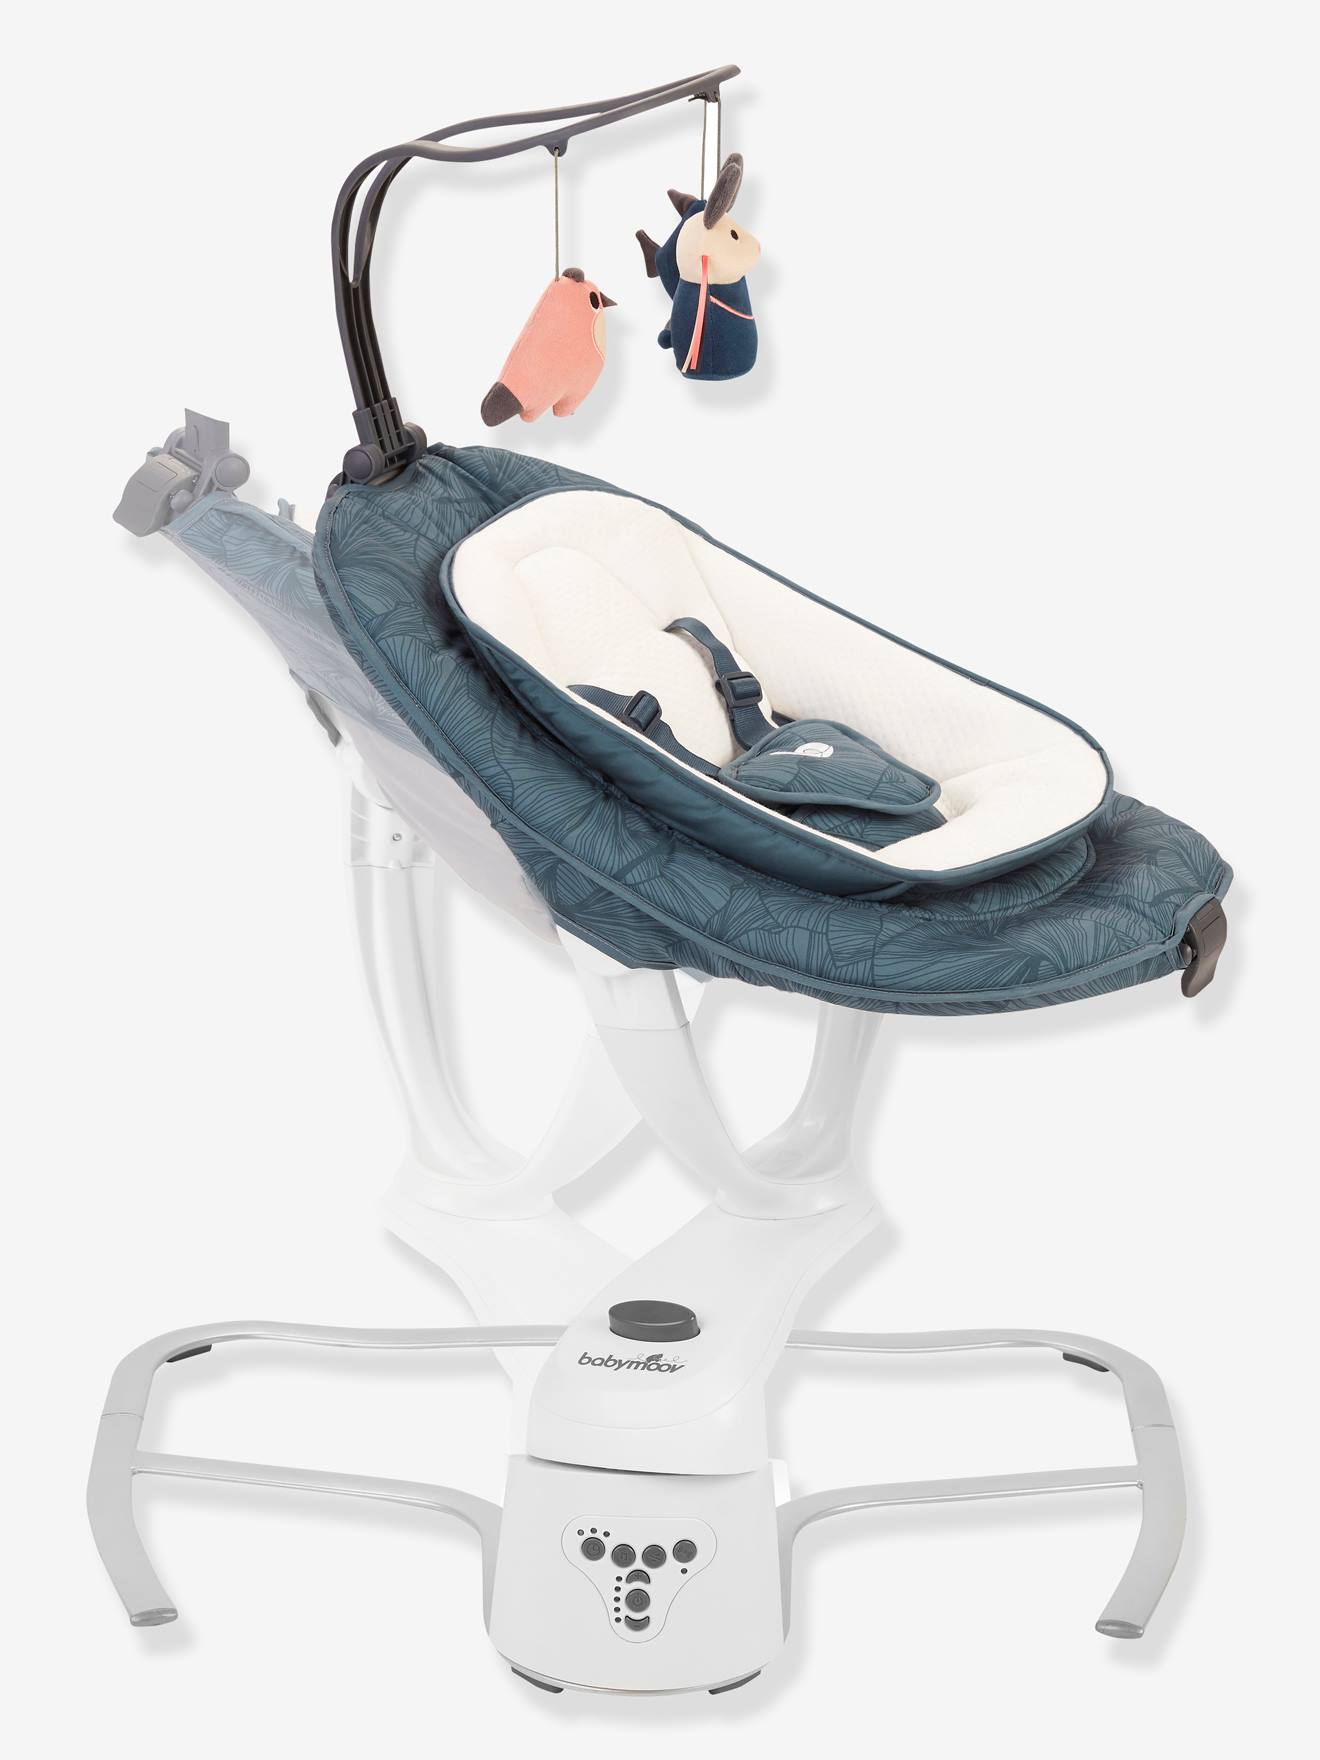 & Kindermöbel Babywippen Baby & Kind Babyartikel Baby Lobo Babywippe mit ergonomischen 